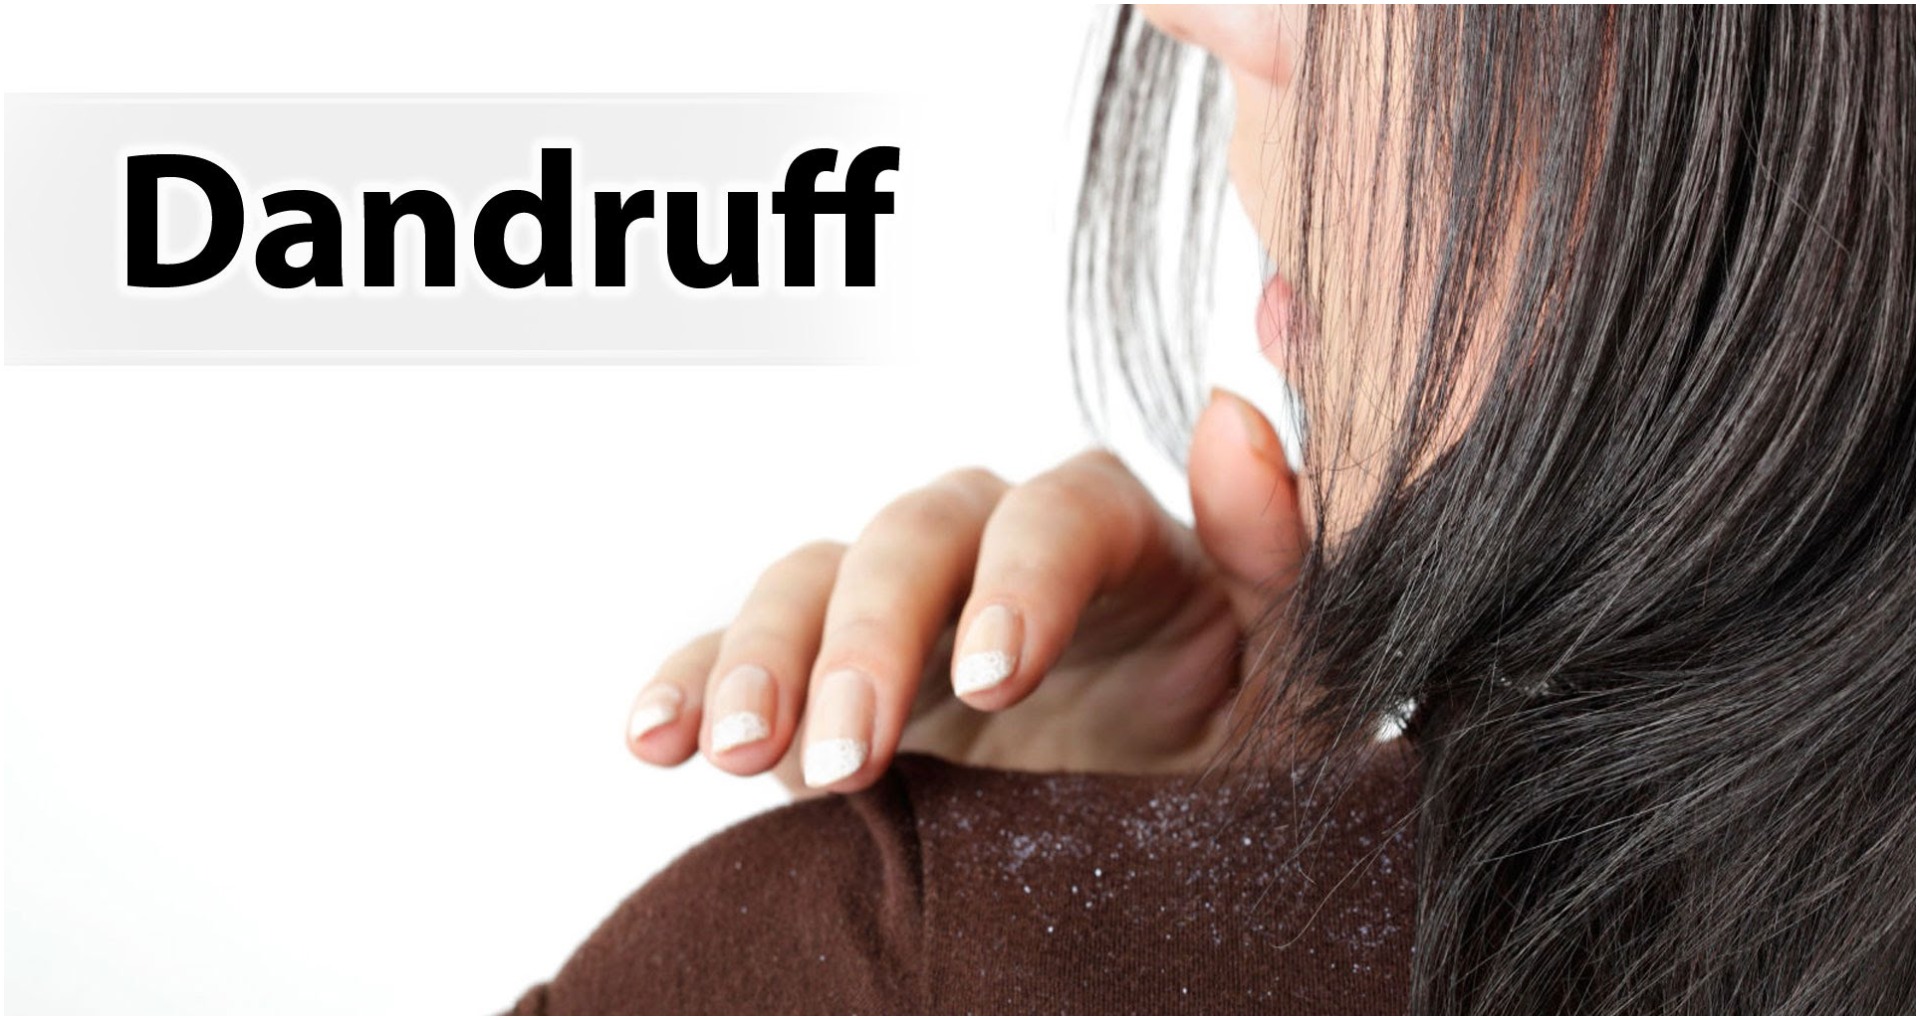 Hair Care Tips: इन देसी उपायों से डैंड्रफ को हमेशा के लिए अपने बालों से करें बाय-बाय, अपनाए ये सिंपल टिप्स